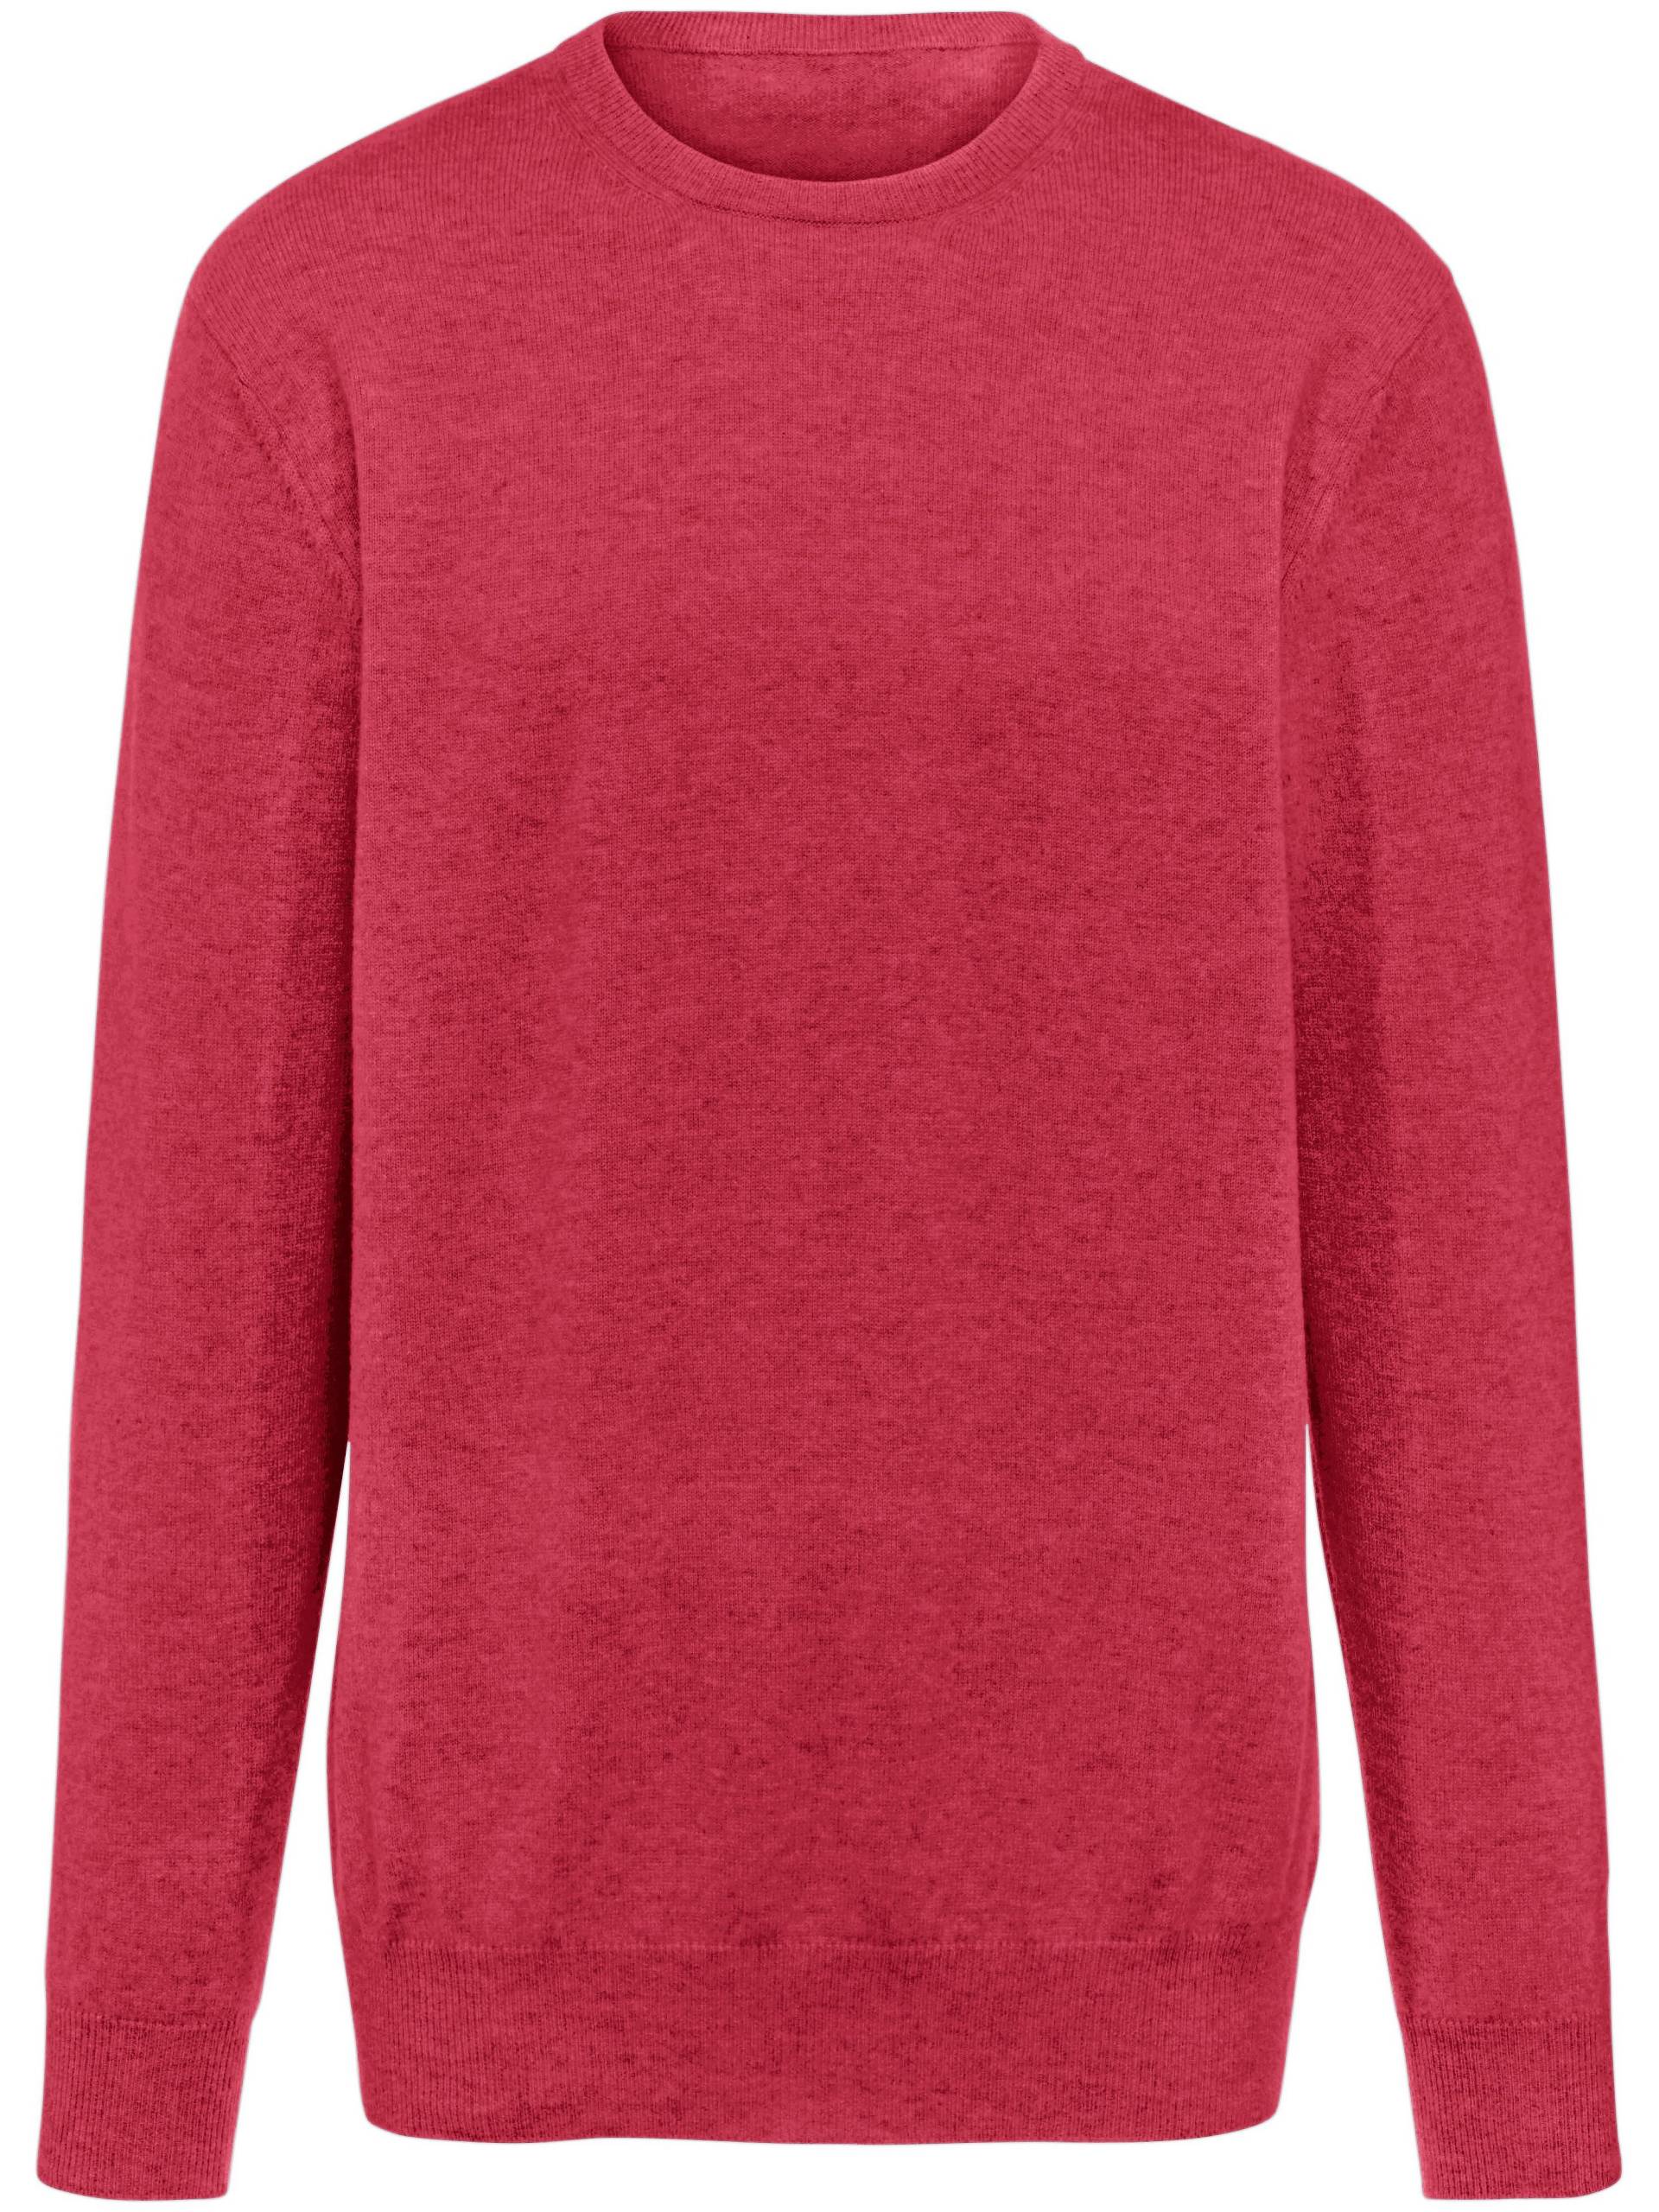 Pullover aus 100% Premium-Kaschmir Modell Ralph Peter Hahn Cashmere rot Größe: 52 von Peter Hahn Cashmere